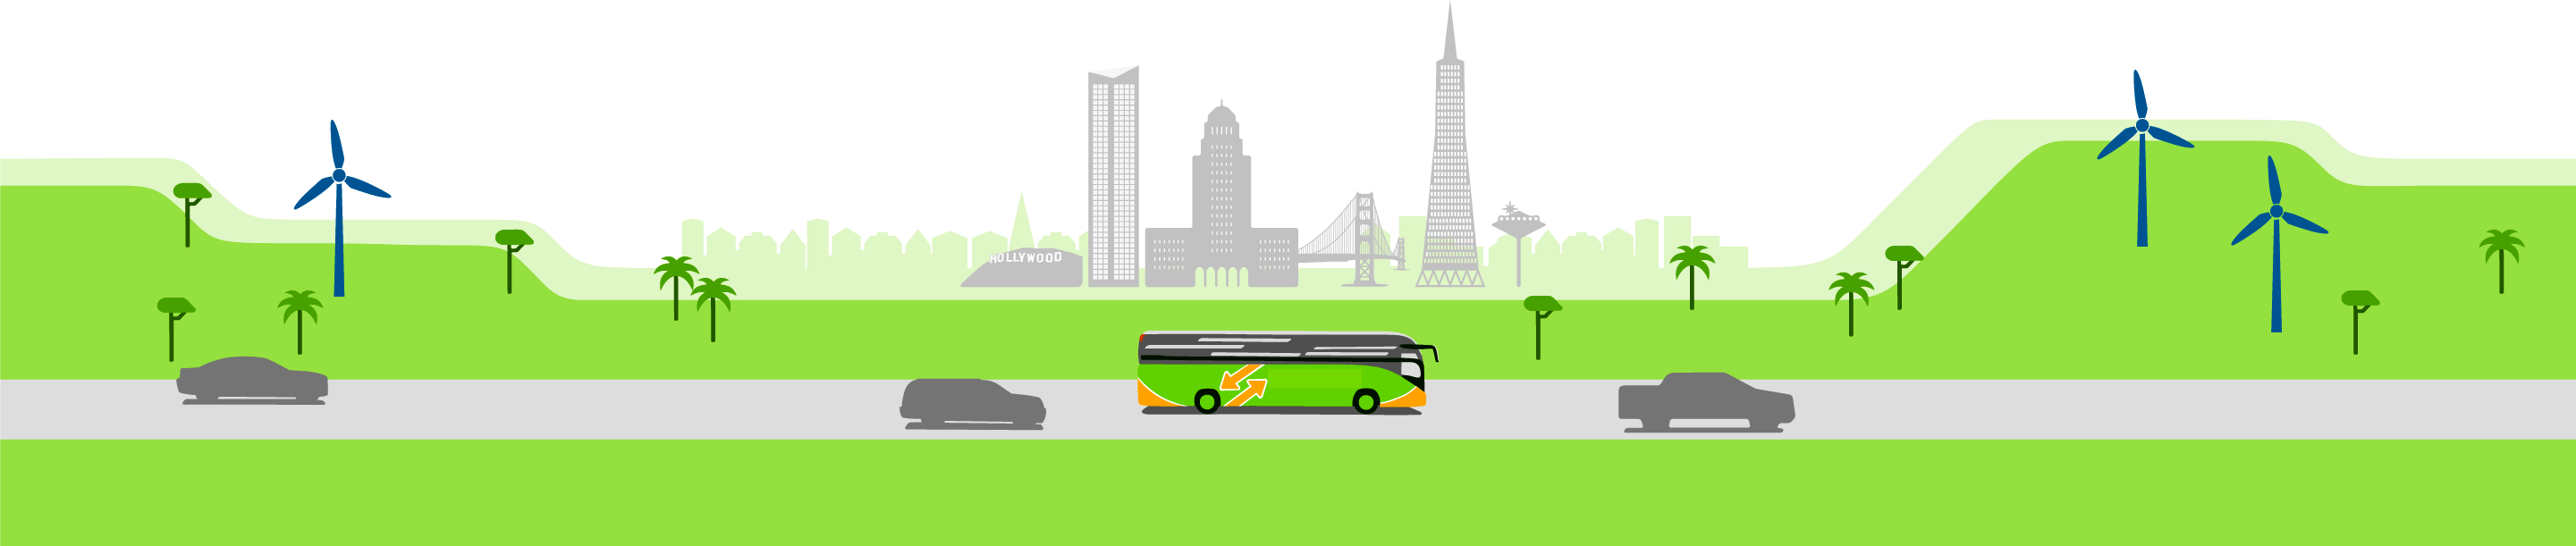 Please Select Bus Details - Tour Bus Service (2881x611), Png Download